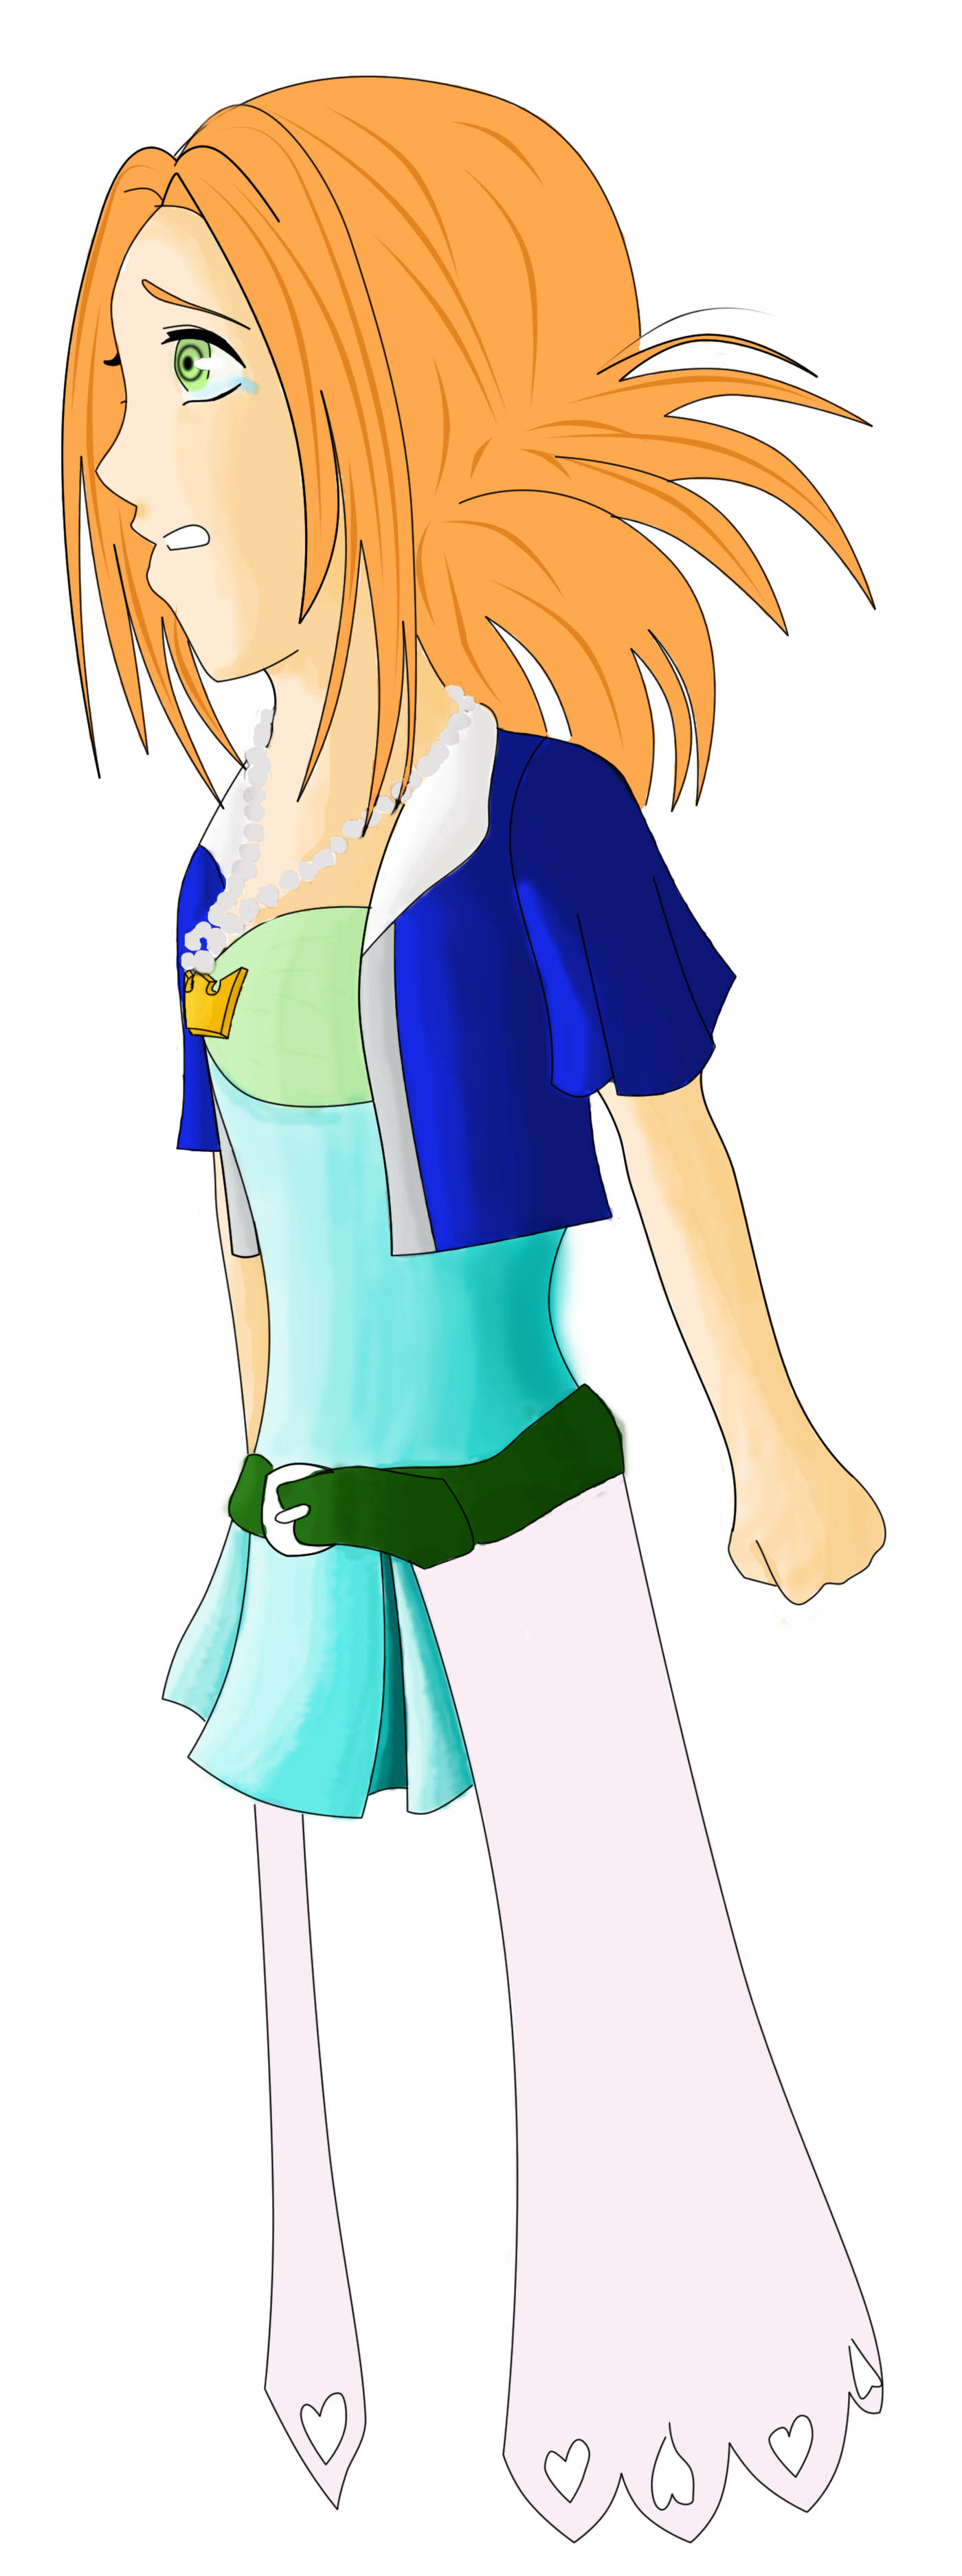 My Kingdom Hearts Character by Macha